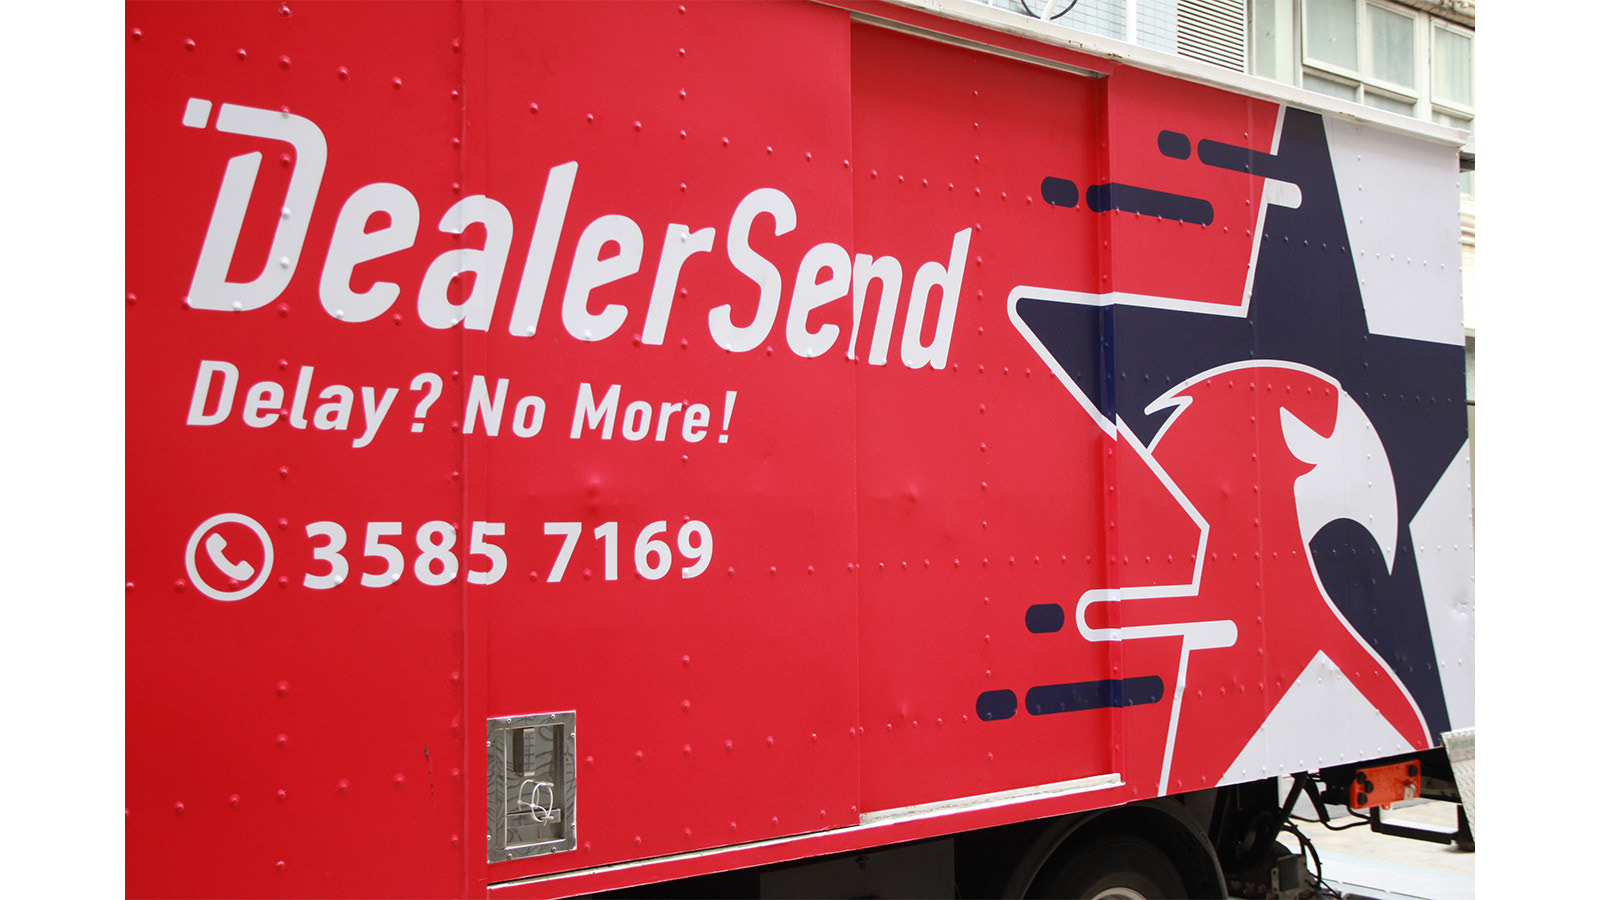 DealerSend - Delay? No More!